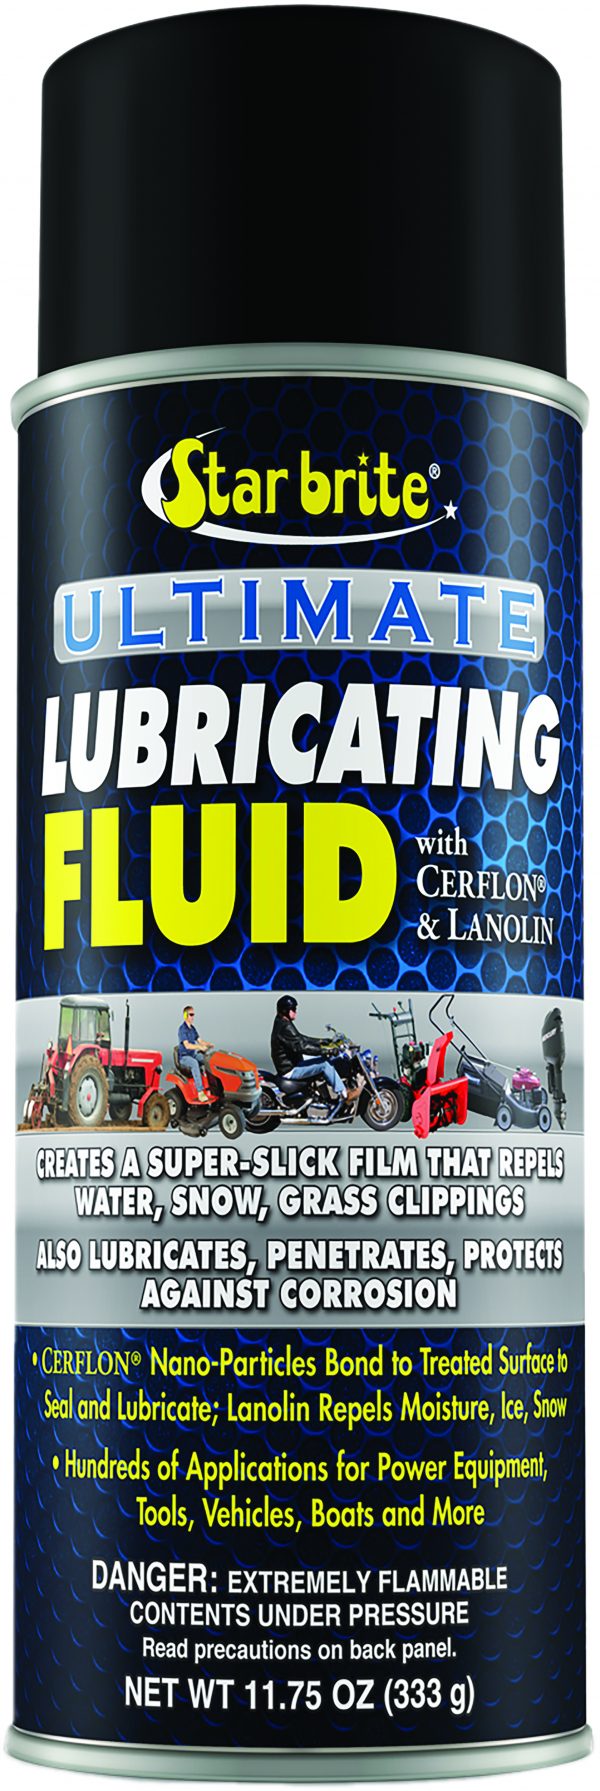 Ultimate Lubricating Fluid Image